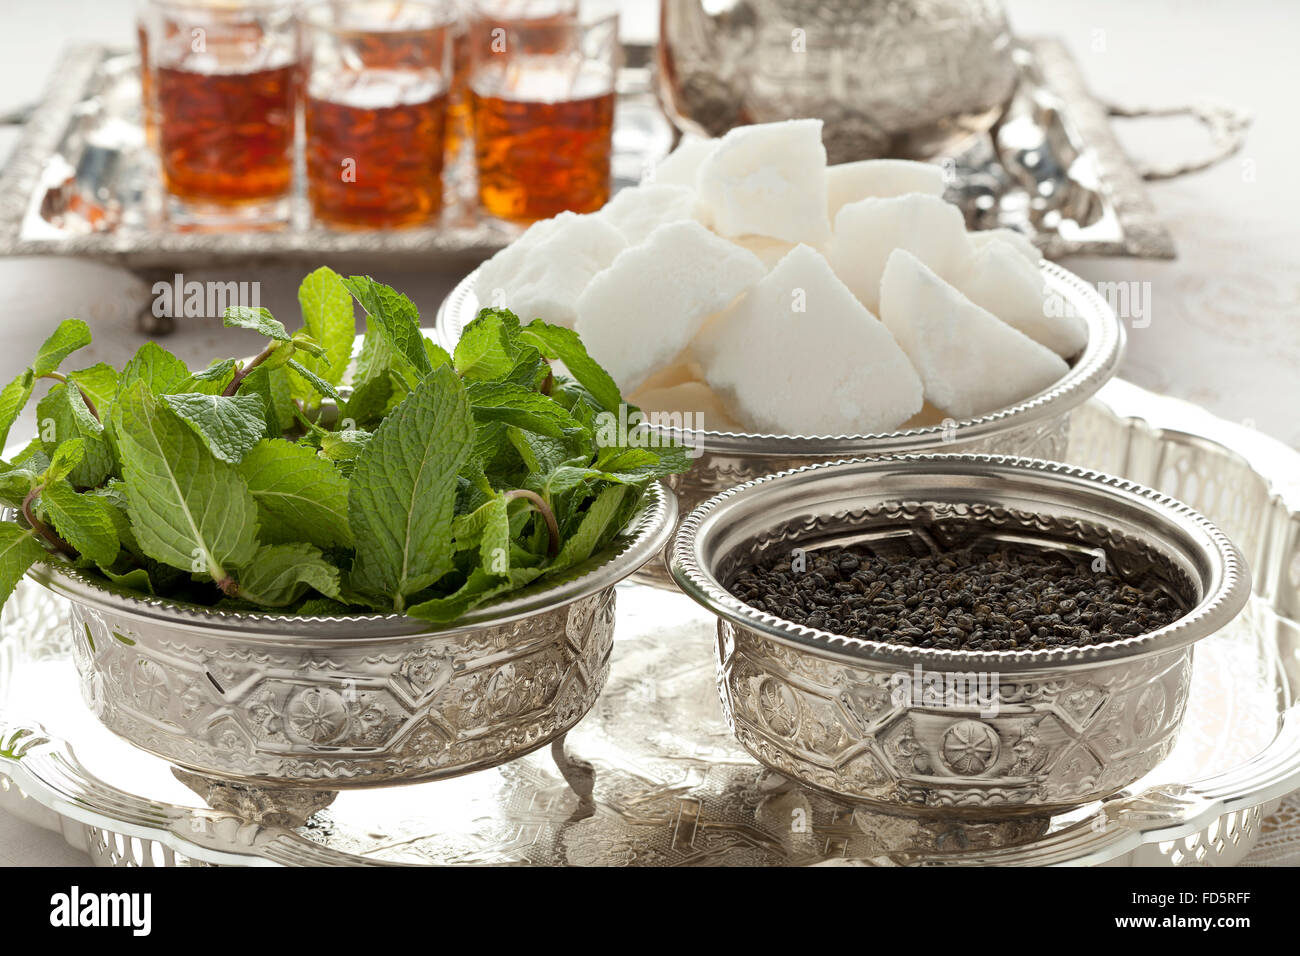 Marokkanischer Tee-Set mit Zucker, Minze und Tee in traditionellen Schalen Stockfoto